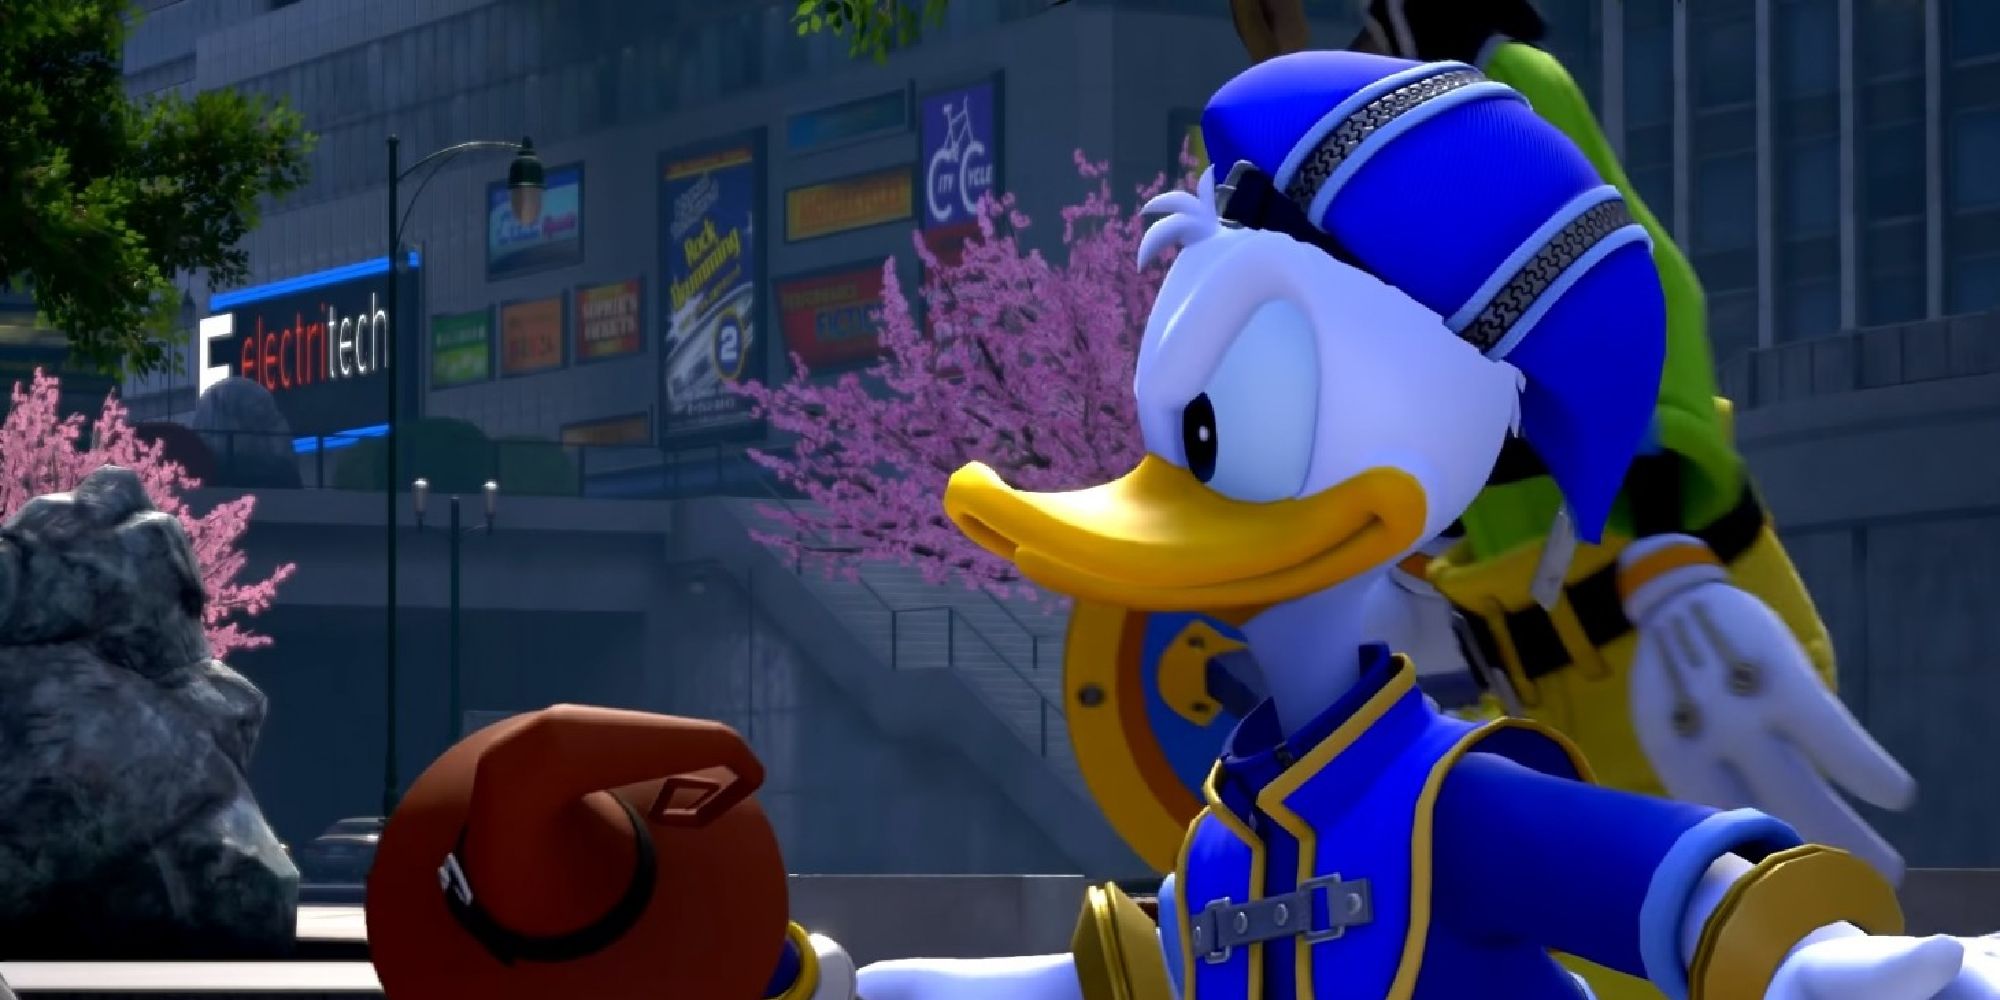 A determined Donald Duck walking alongside Goofy in Kingdom Hearts 3